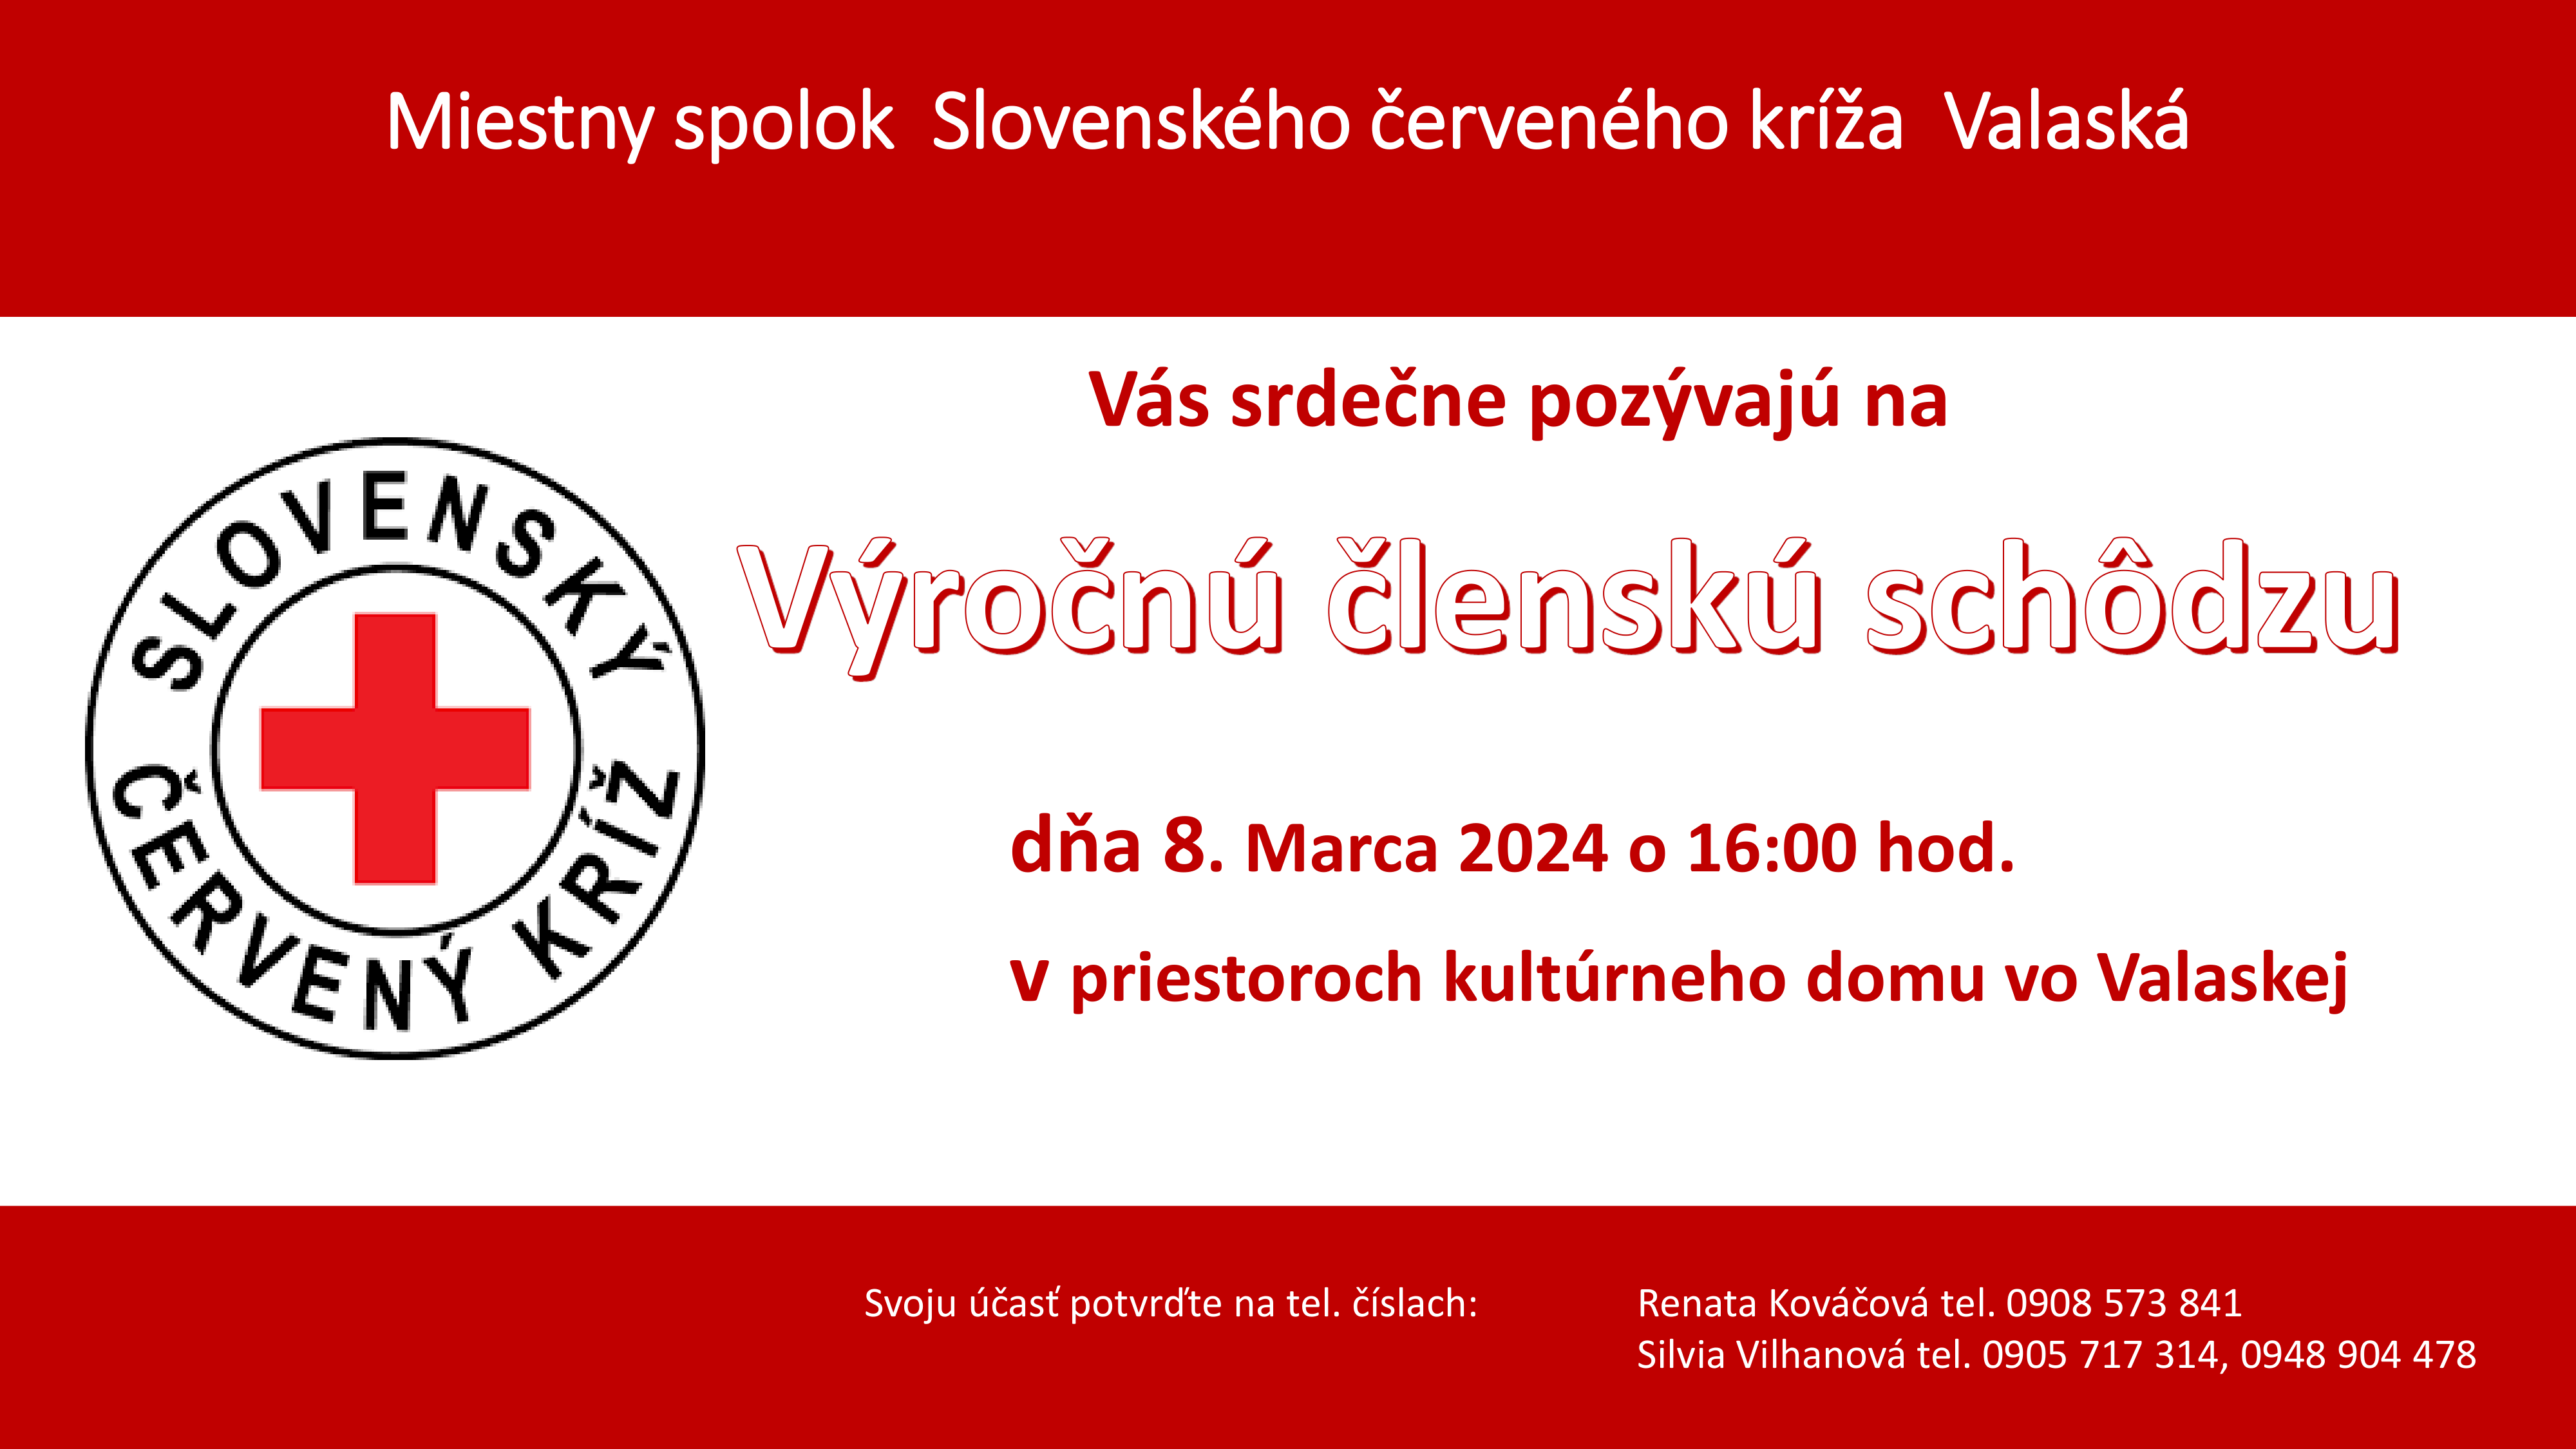 Výročná členská schôdza – Miestny spolok Slovenského červeného kríža